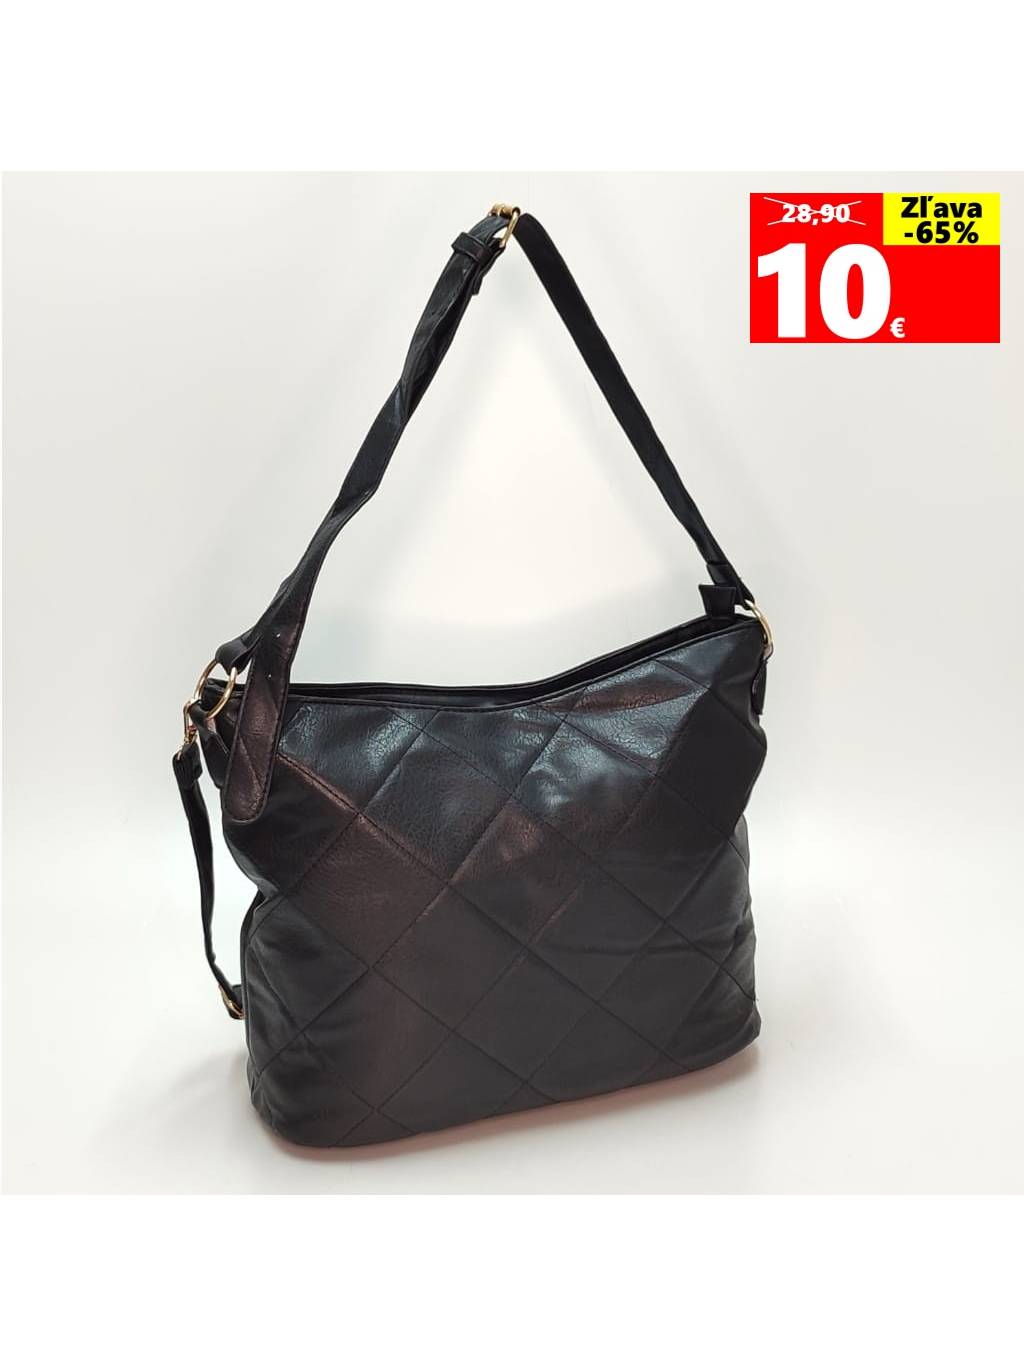 Dámska kabelka H3009 čierna www.kabelky vypredaj (12)